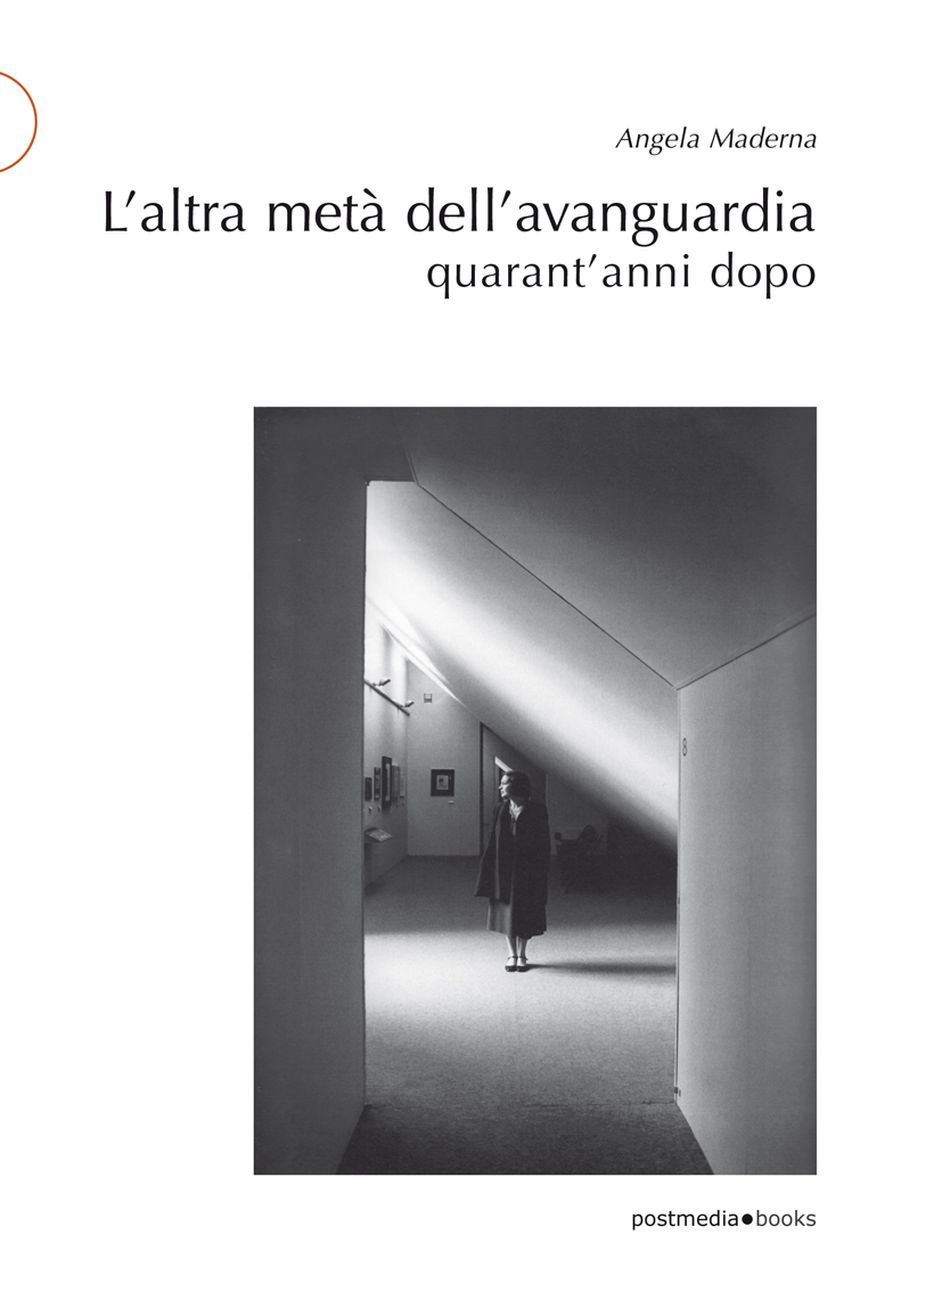 Angela Maderna – L'altra metà dell'avanguardia quarant'anni dopo (Postmedia Books, Milano 2020)